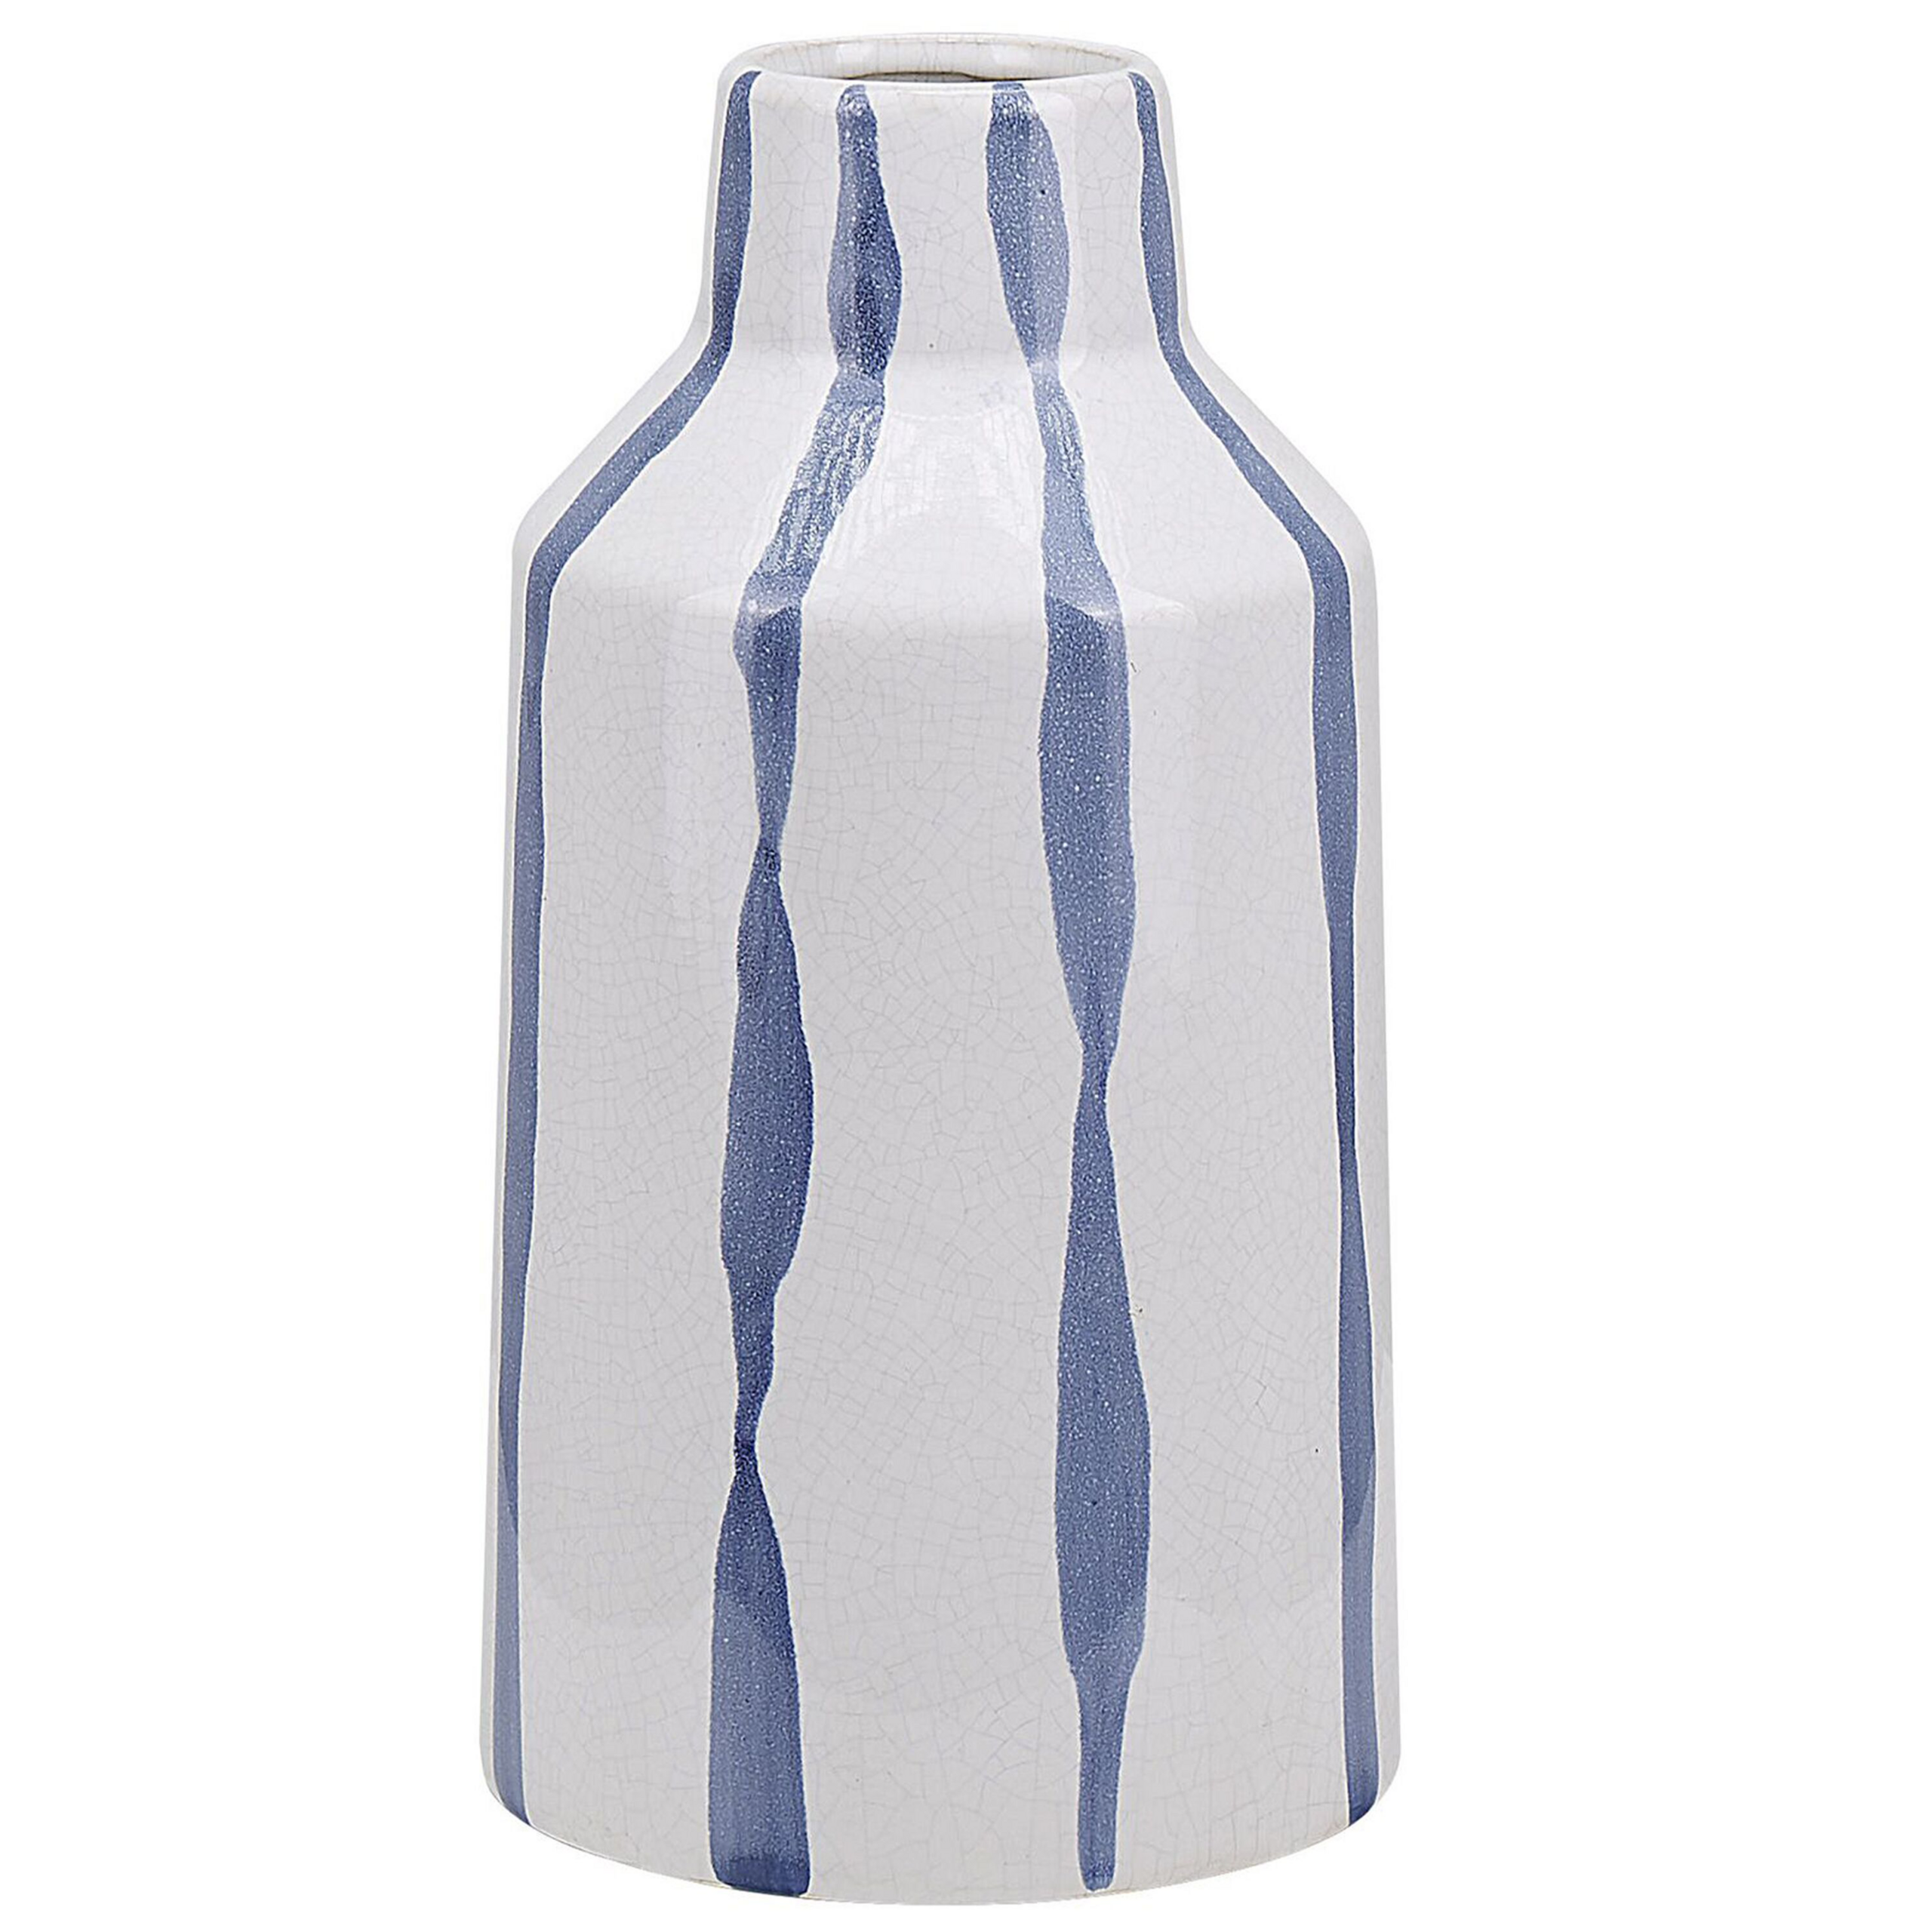 Beliani Vaso decorativo em cerâmica azul e branca com riscas em aspeto estalado estilo vintage